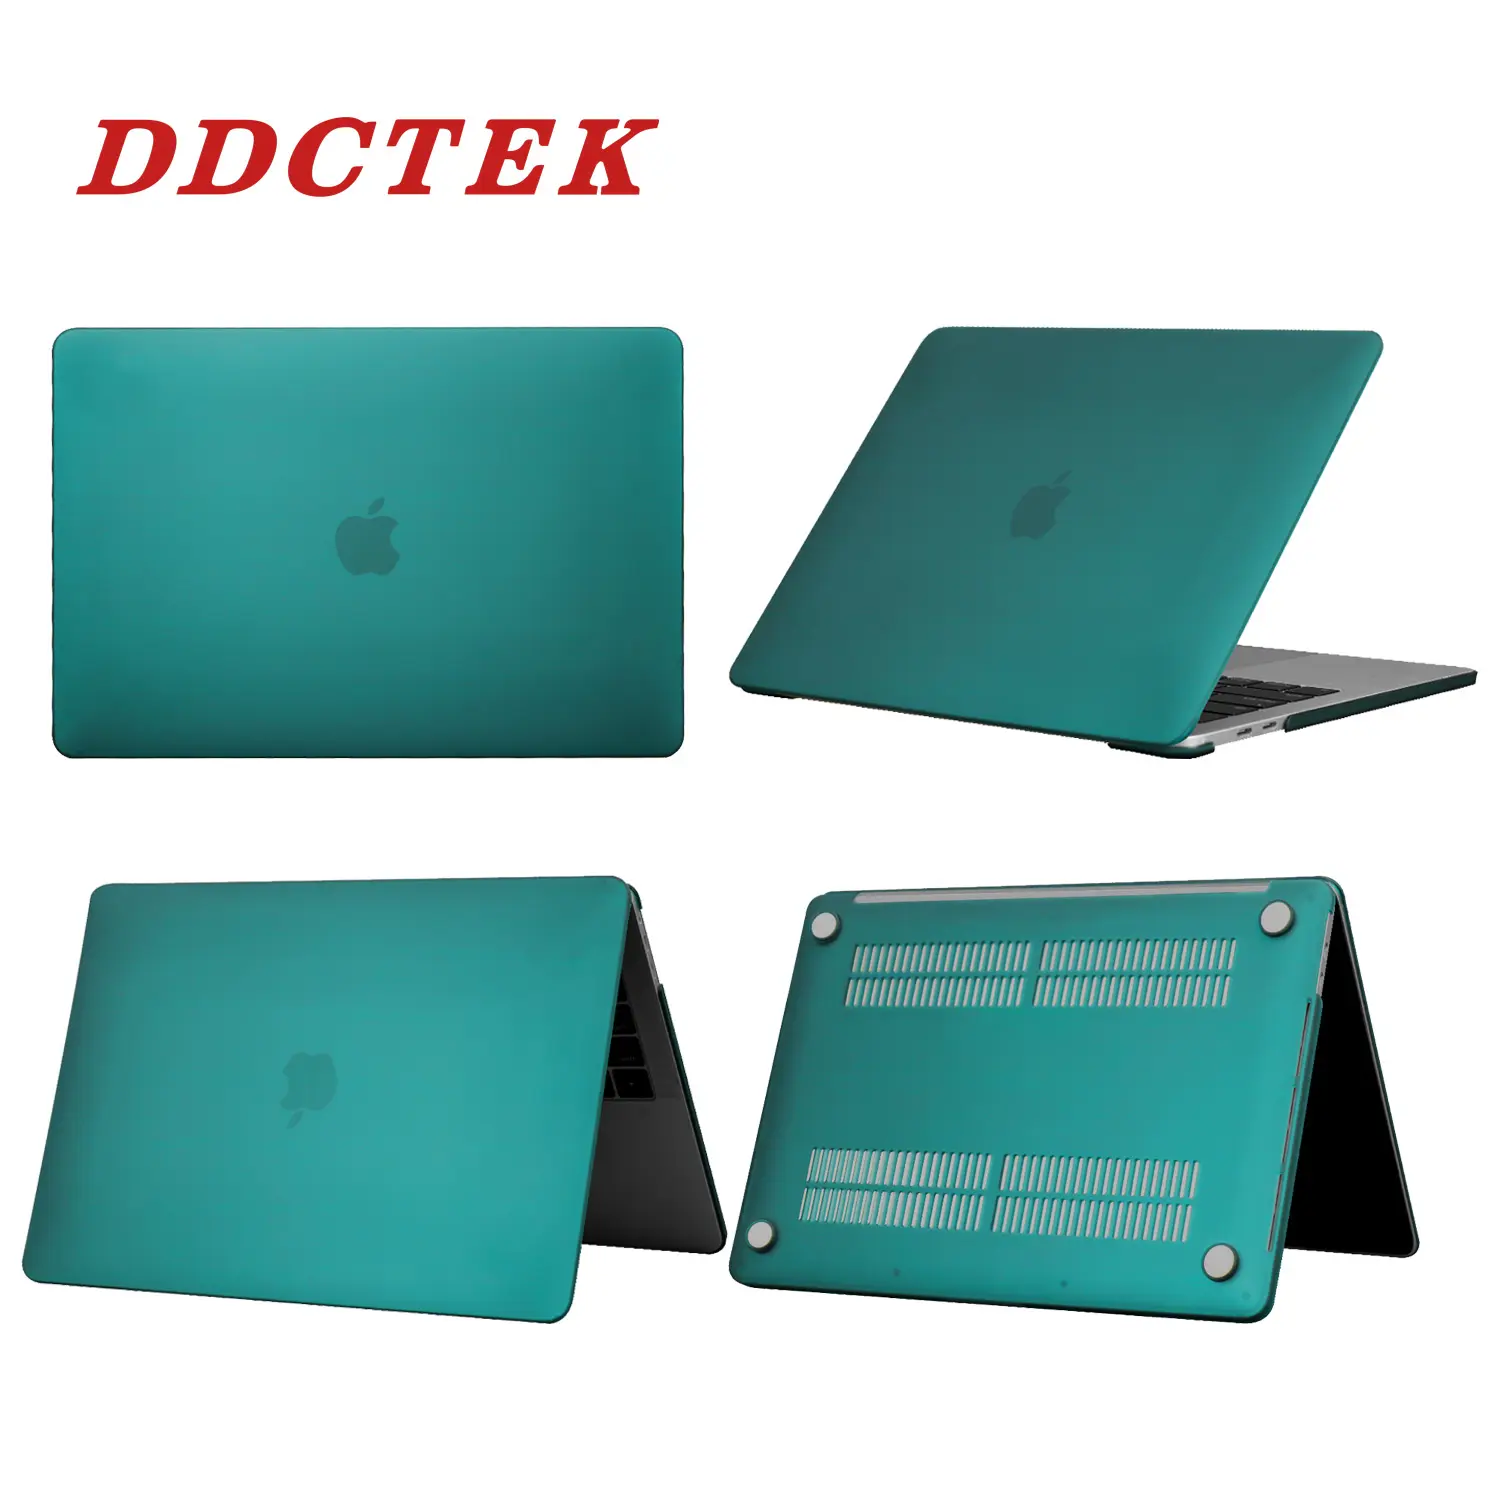 Coque rigide en plastique mat pour ordinateur portable, compatible avec mac book, air pro et macbook, pièces